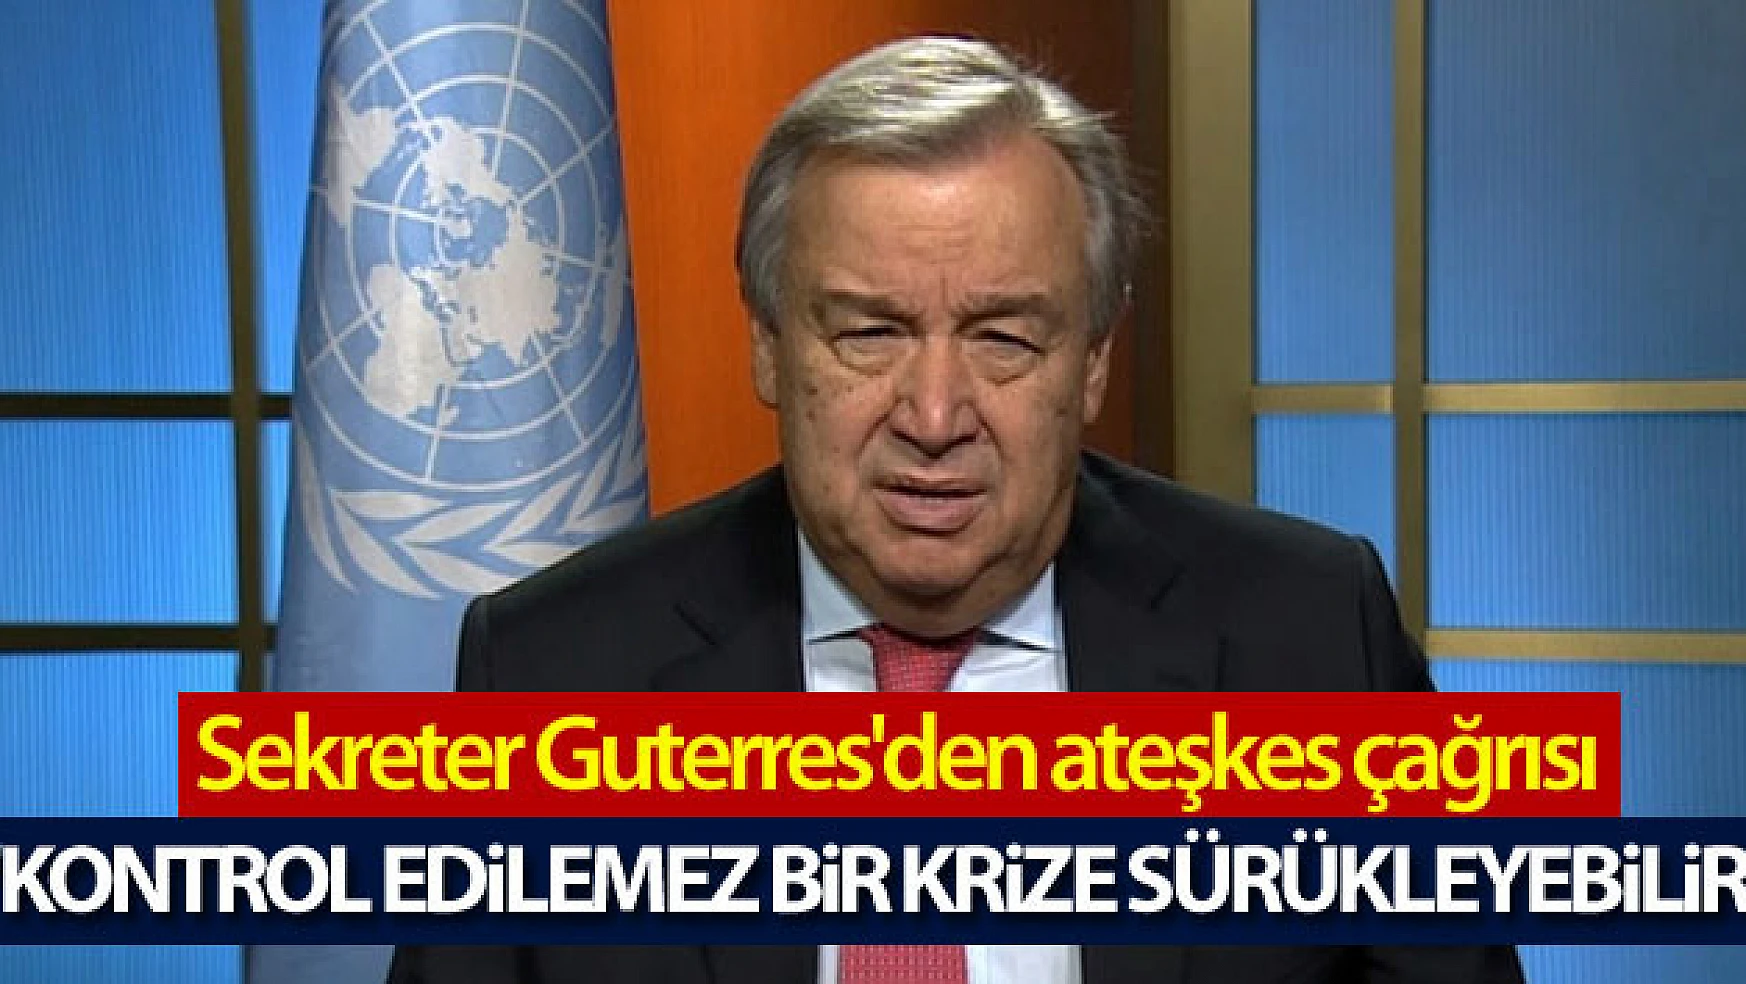 BM Genel Sekreteri Guterres'den ateşkes çağrısı: 'Kontrol edilemez bir krize sürükleyebilir'